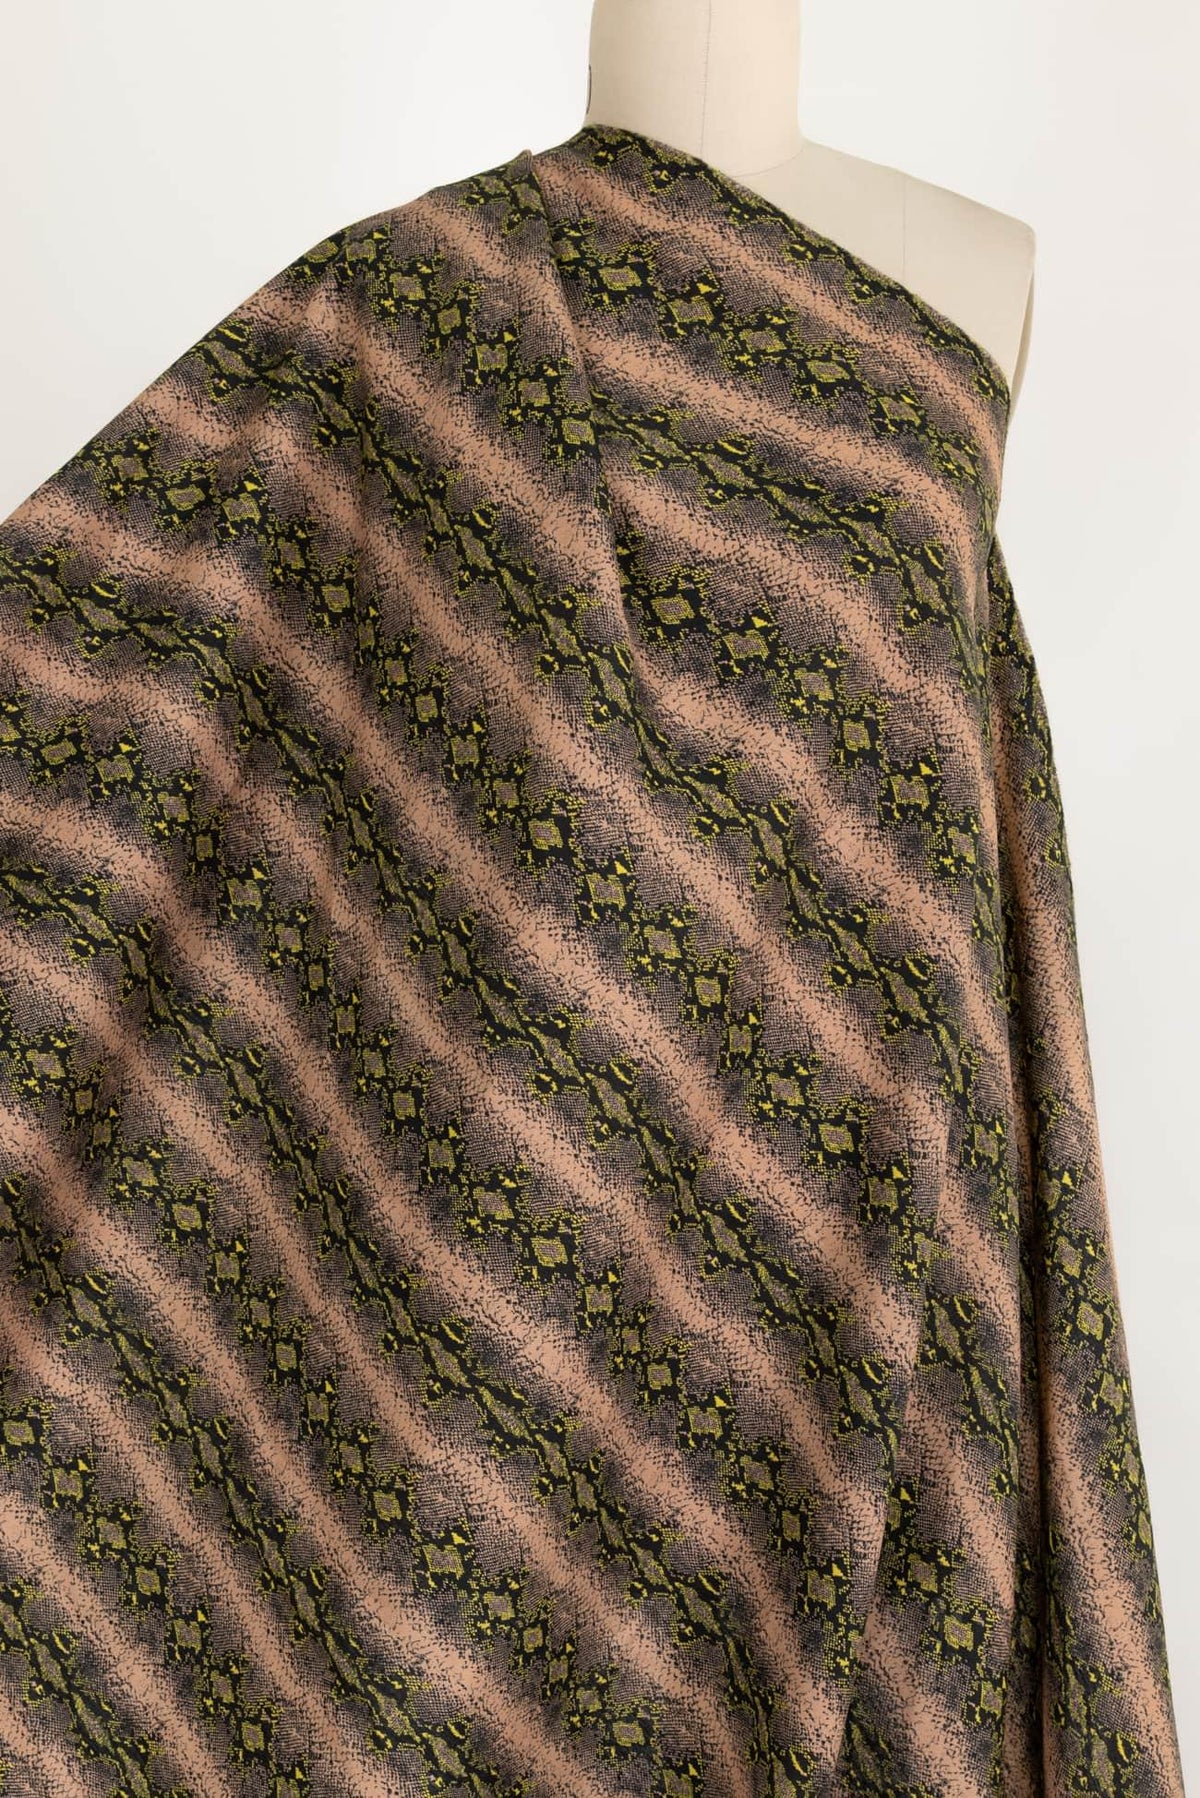 Peachskin Linen Woven - Marcy Tilton Fabrics